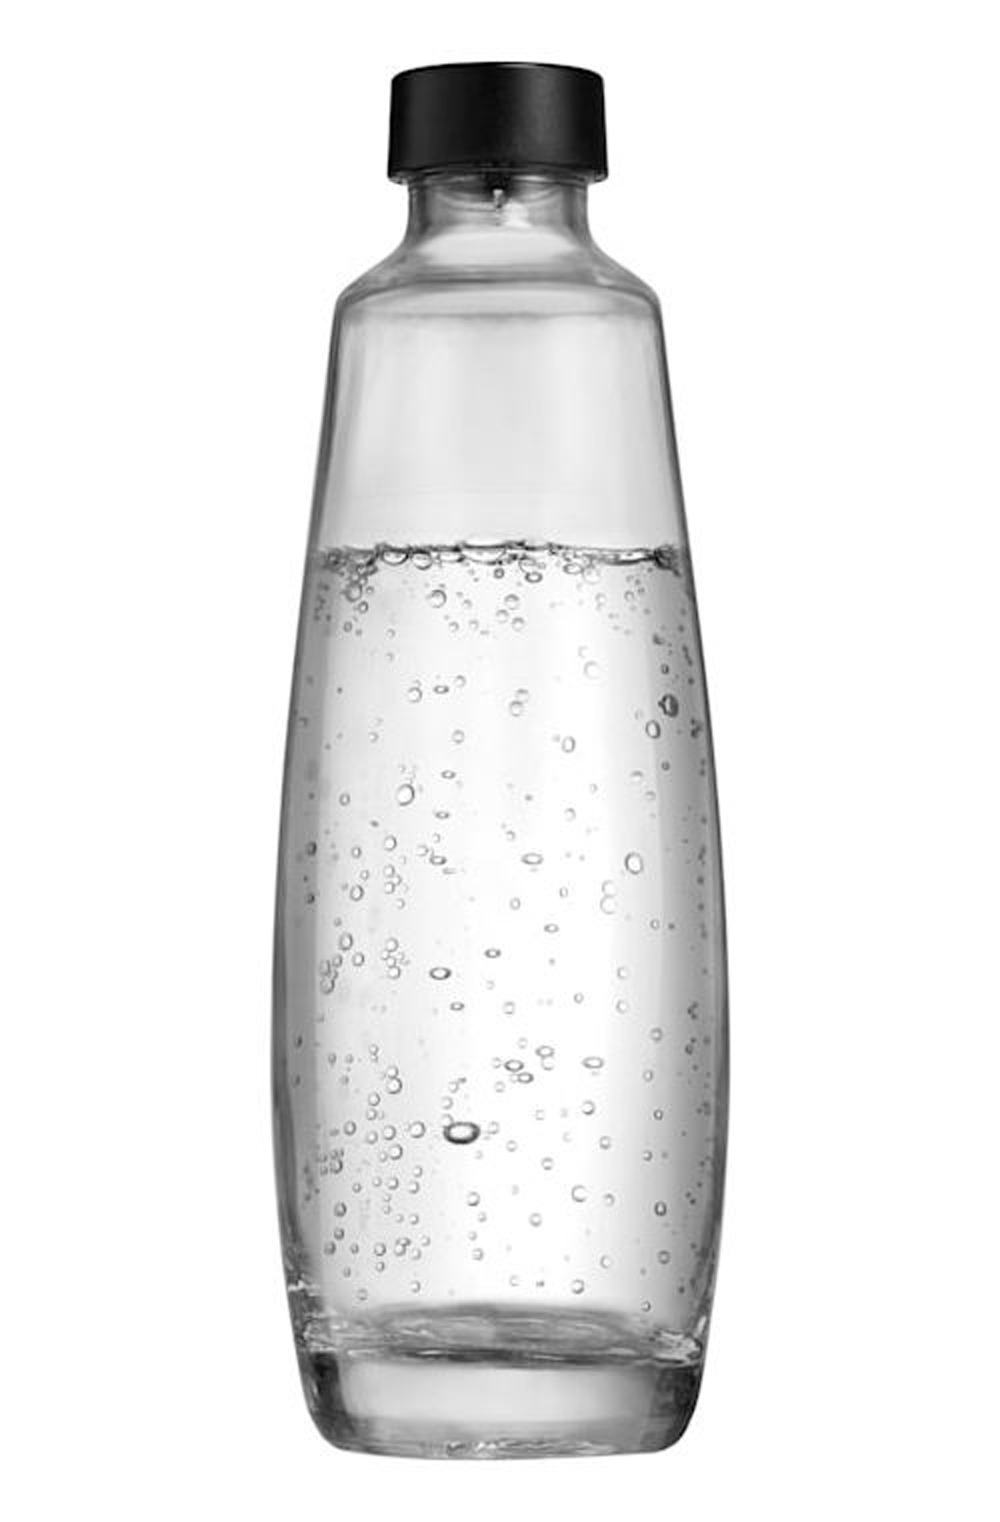 Eau minérale belge non-pétillante, dans une bouteille en verre